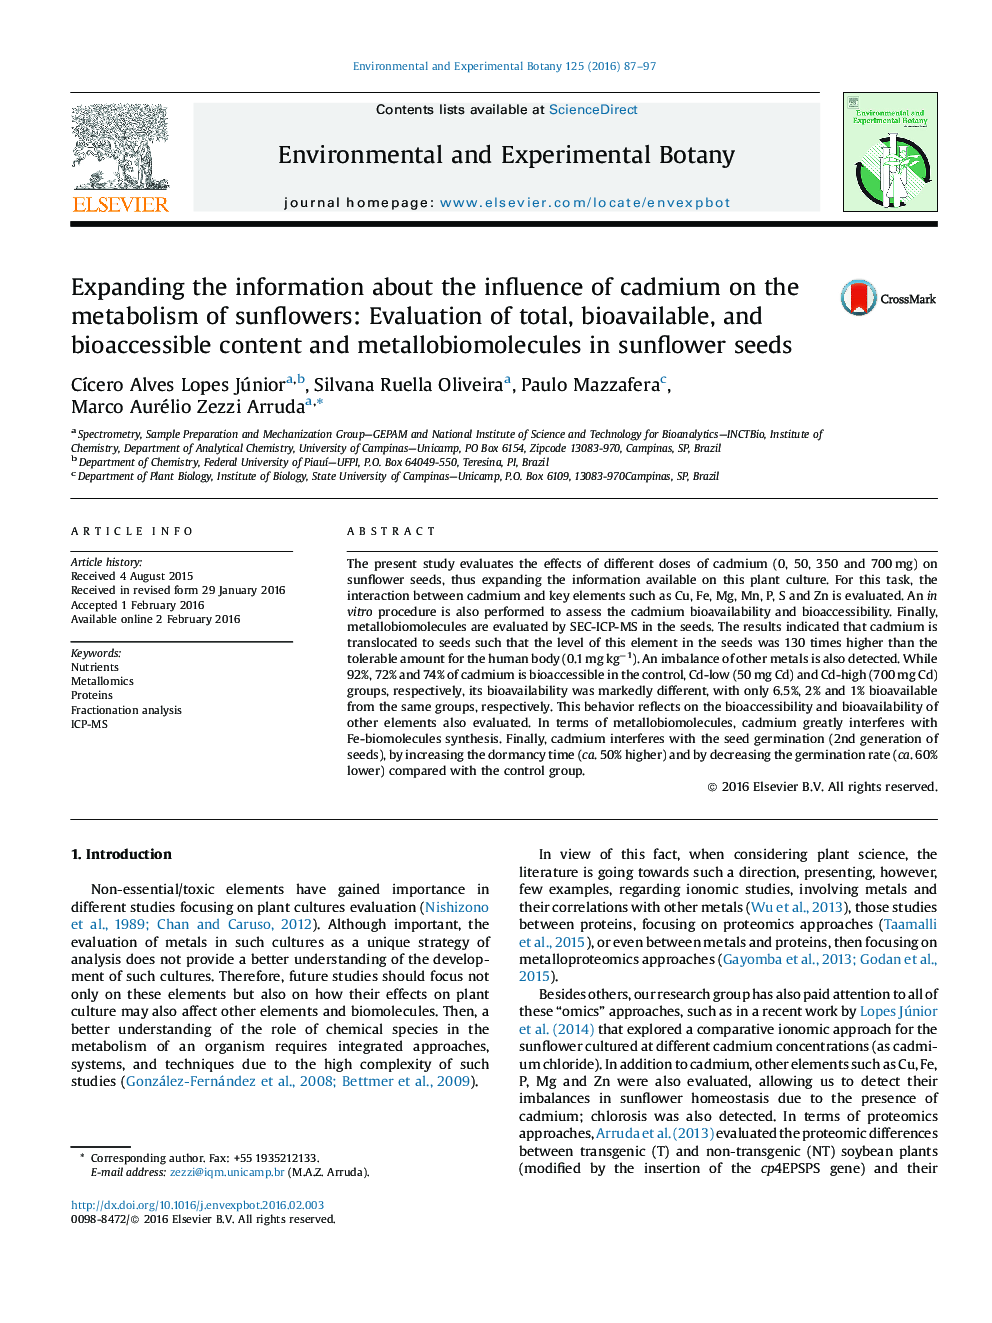 گسترش اطلاعات در مورد تاثیر کادمیوم بر متابولیسم آفتابگردان: ارزیابی محتوای کل، قابل دسترس و قابل دسترس و متلبوموکل ها در دانه های آفتابگردان 